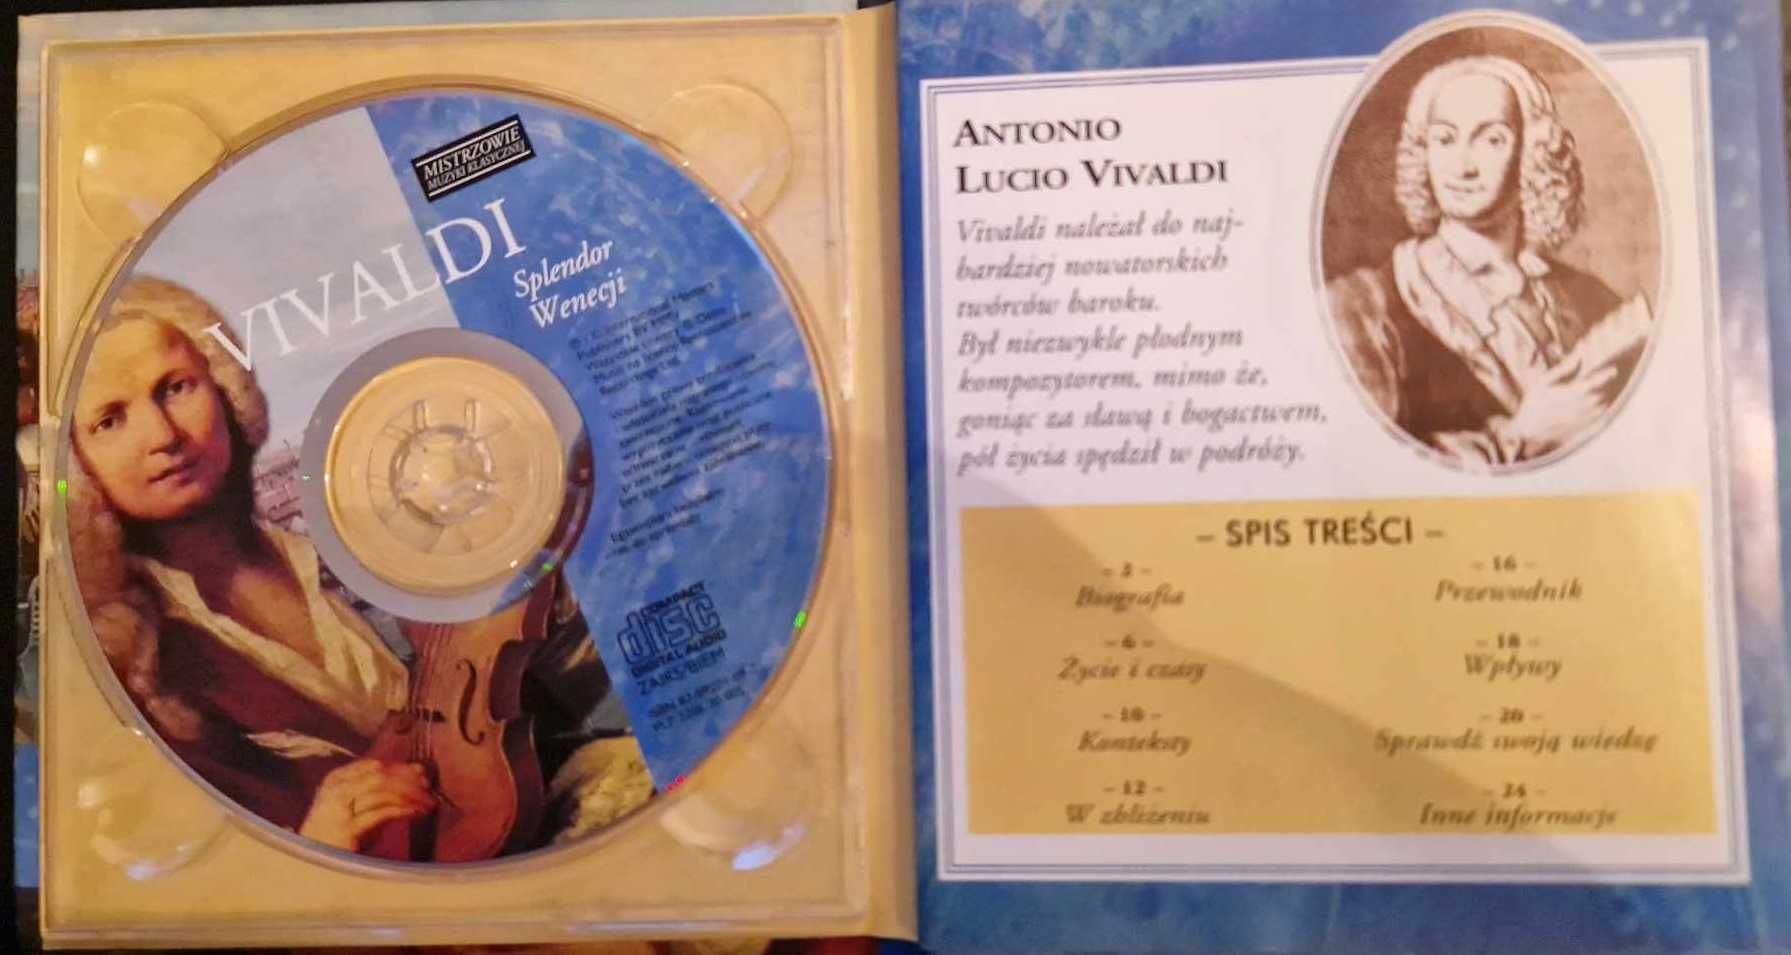 Vivaldi splendor Wenecji - Mistrzowie Muzyki Klasycznej CD